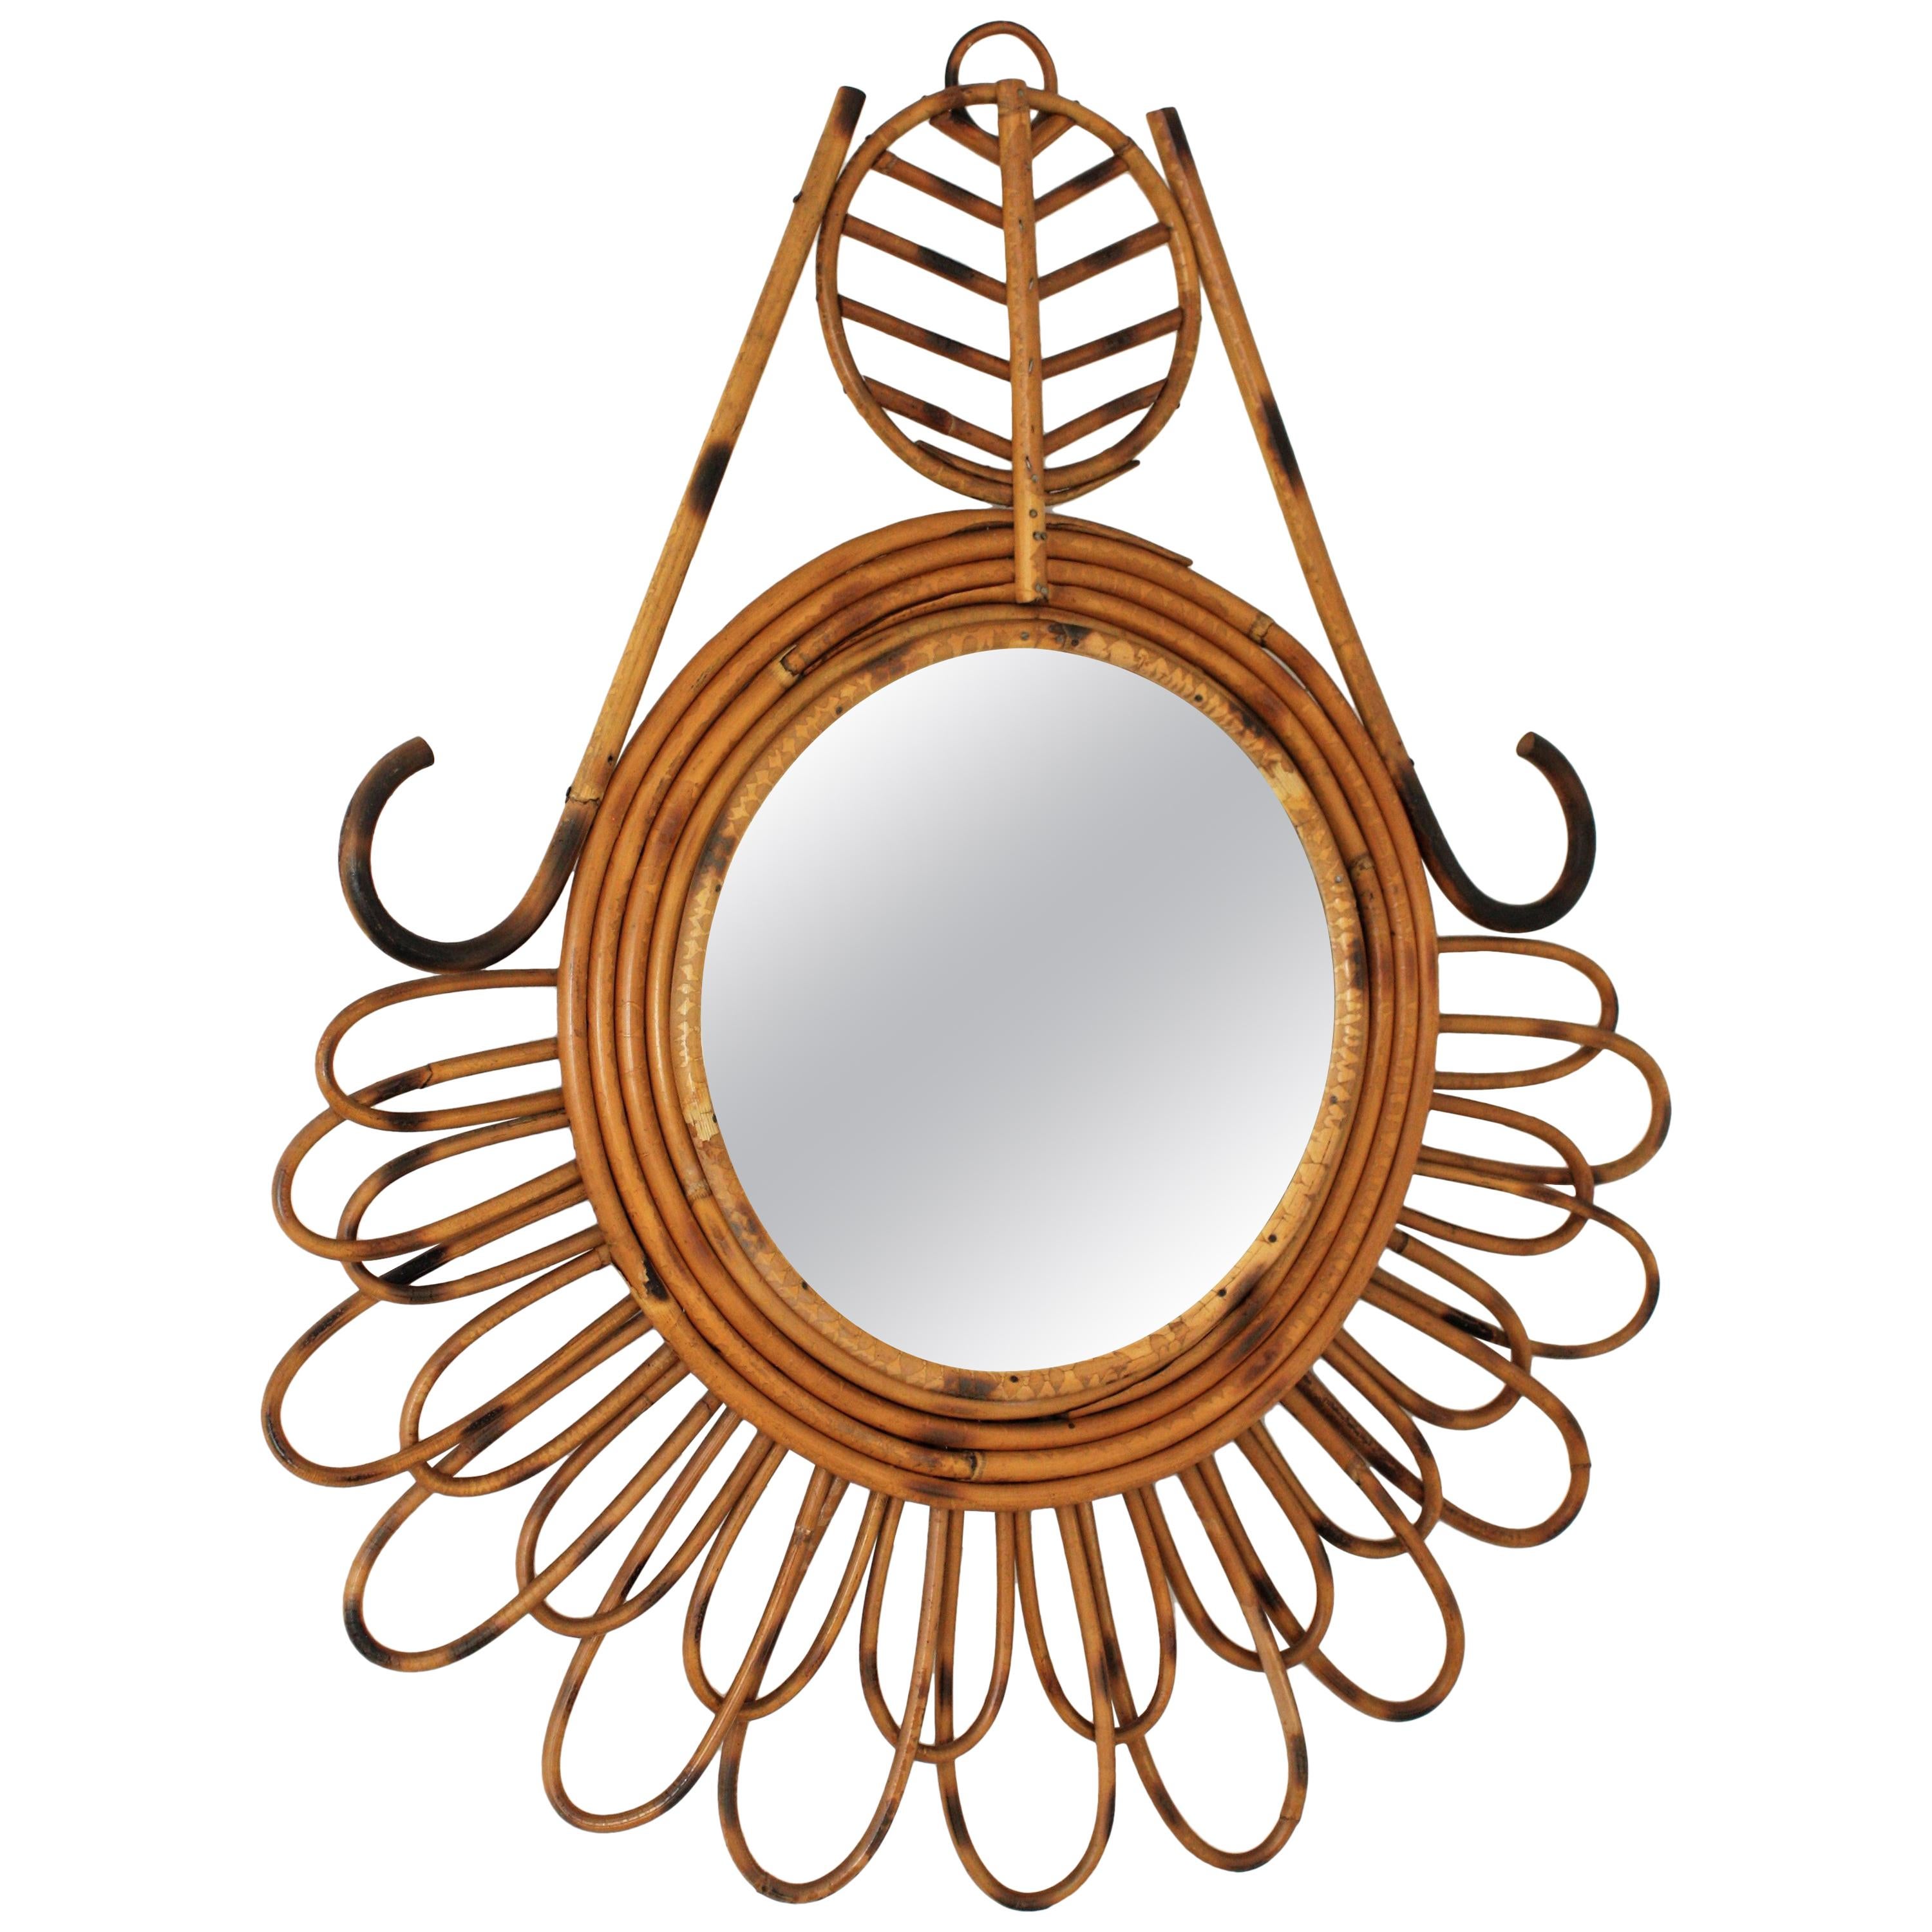 Einzigartiger, handgefertigter, abstrakter Spiegel aus Rattan im mediterranen Stil, Frankreich, 1950-1960.
Dieser Spiegel hat Rattanblüten in zwei Größen, ein abstraktes Dekor, das den Rahmen schmückt, und fünf Rattanschleifen, die ein rundes Glas